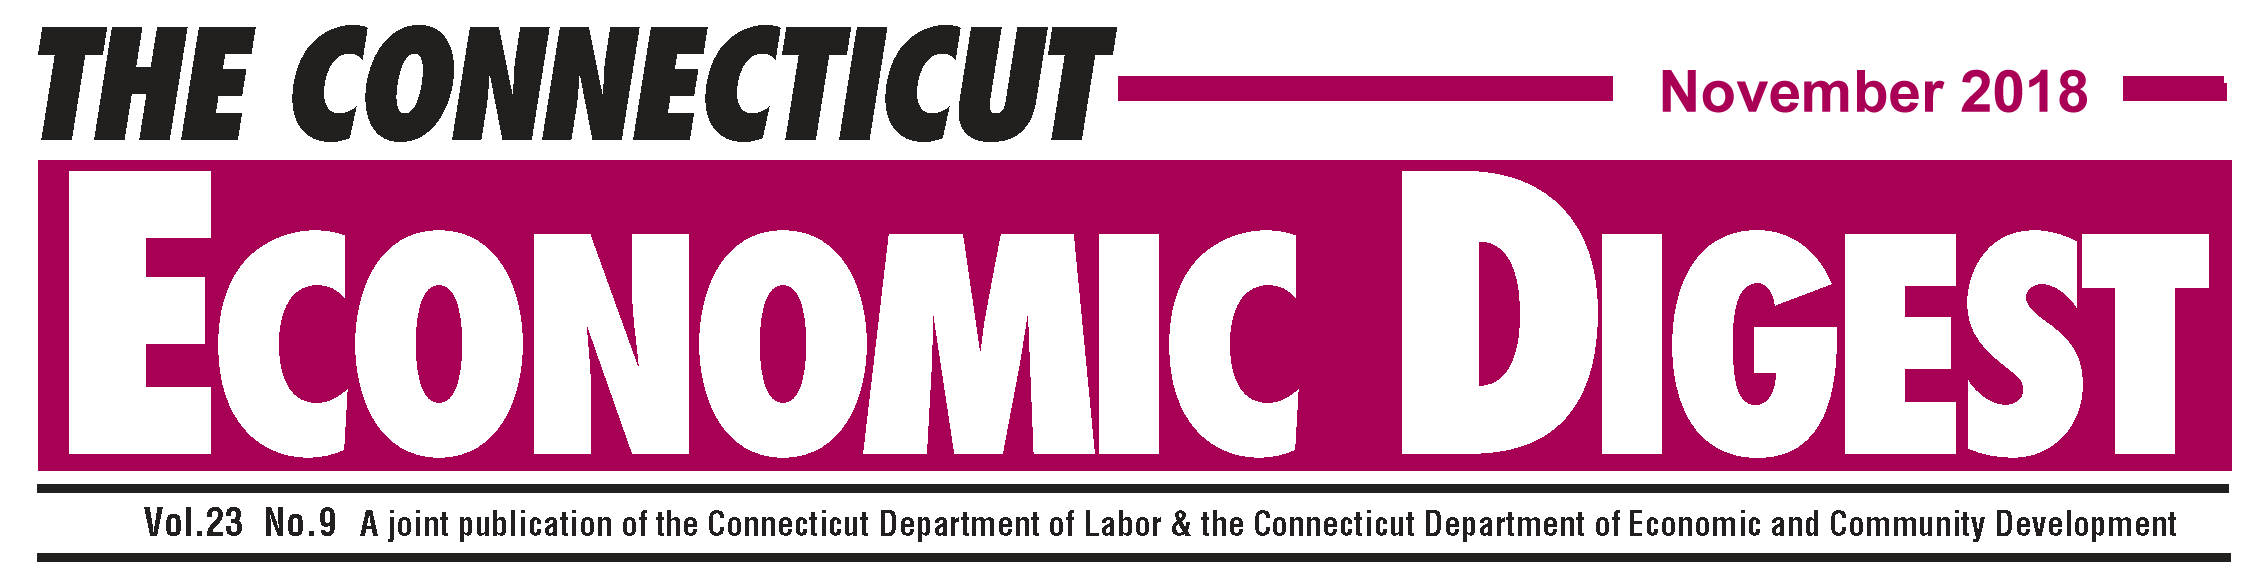 November 2018 Connecticut Economic Digest